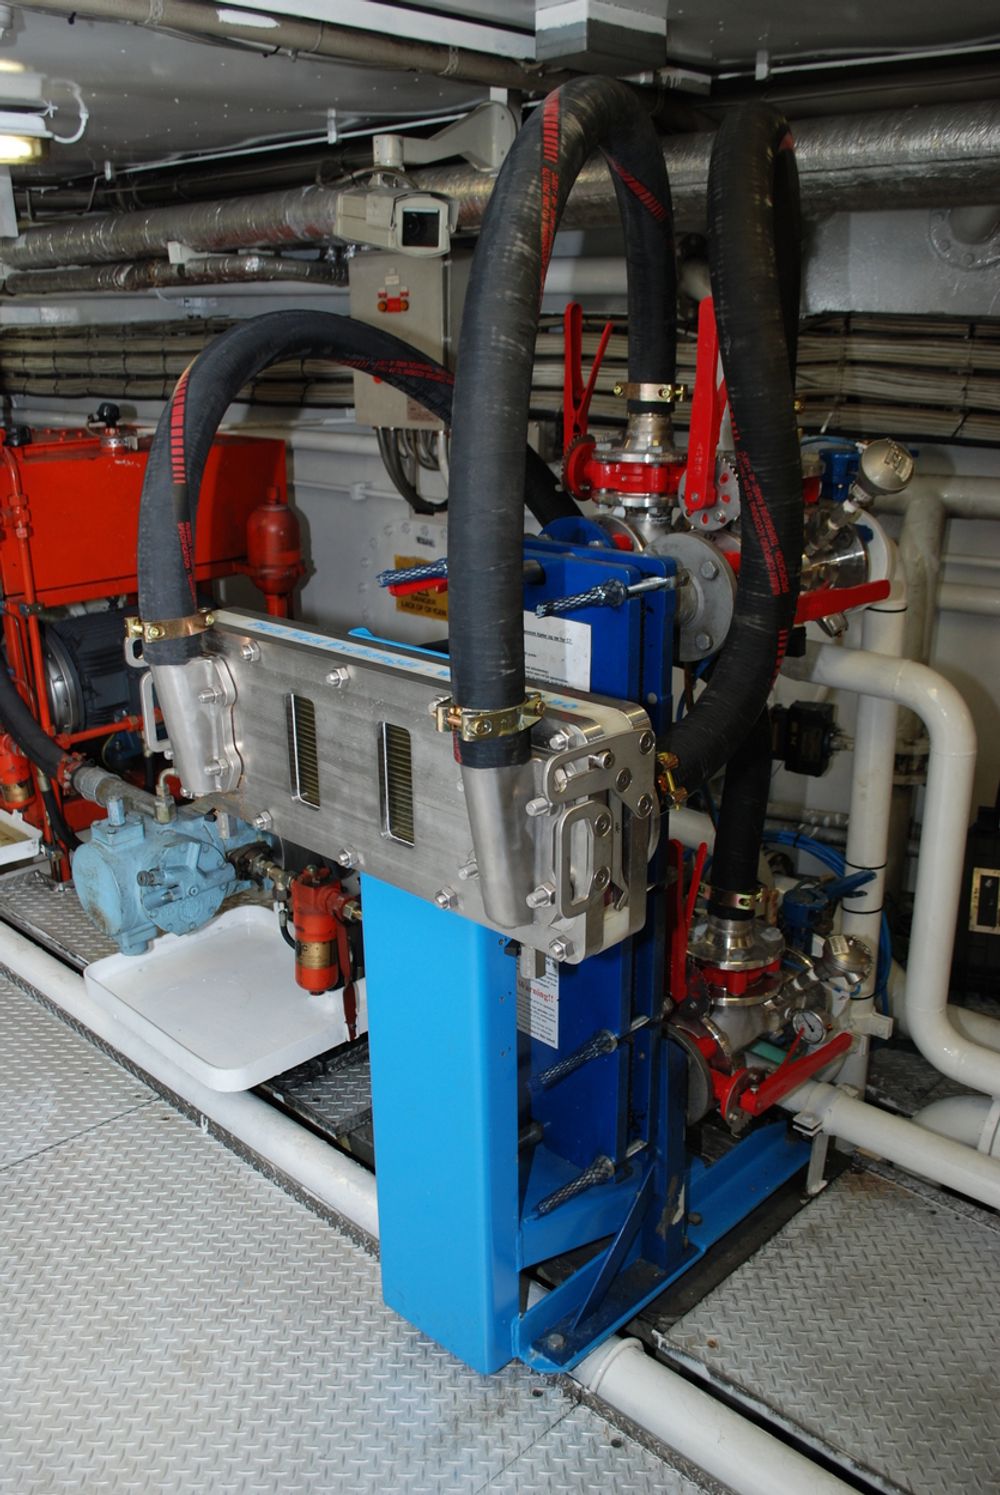 OM BORD: Slik ser kjøleren ut når den er montert til test om bord på bilferja Rennesøy.